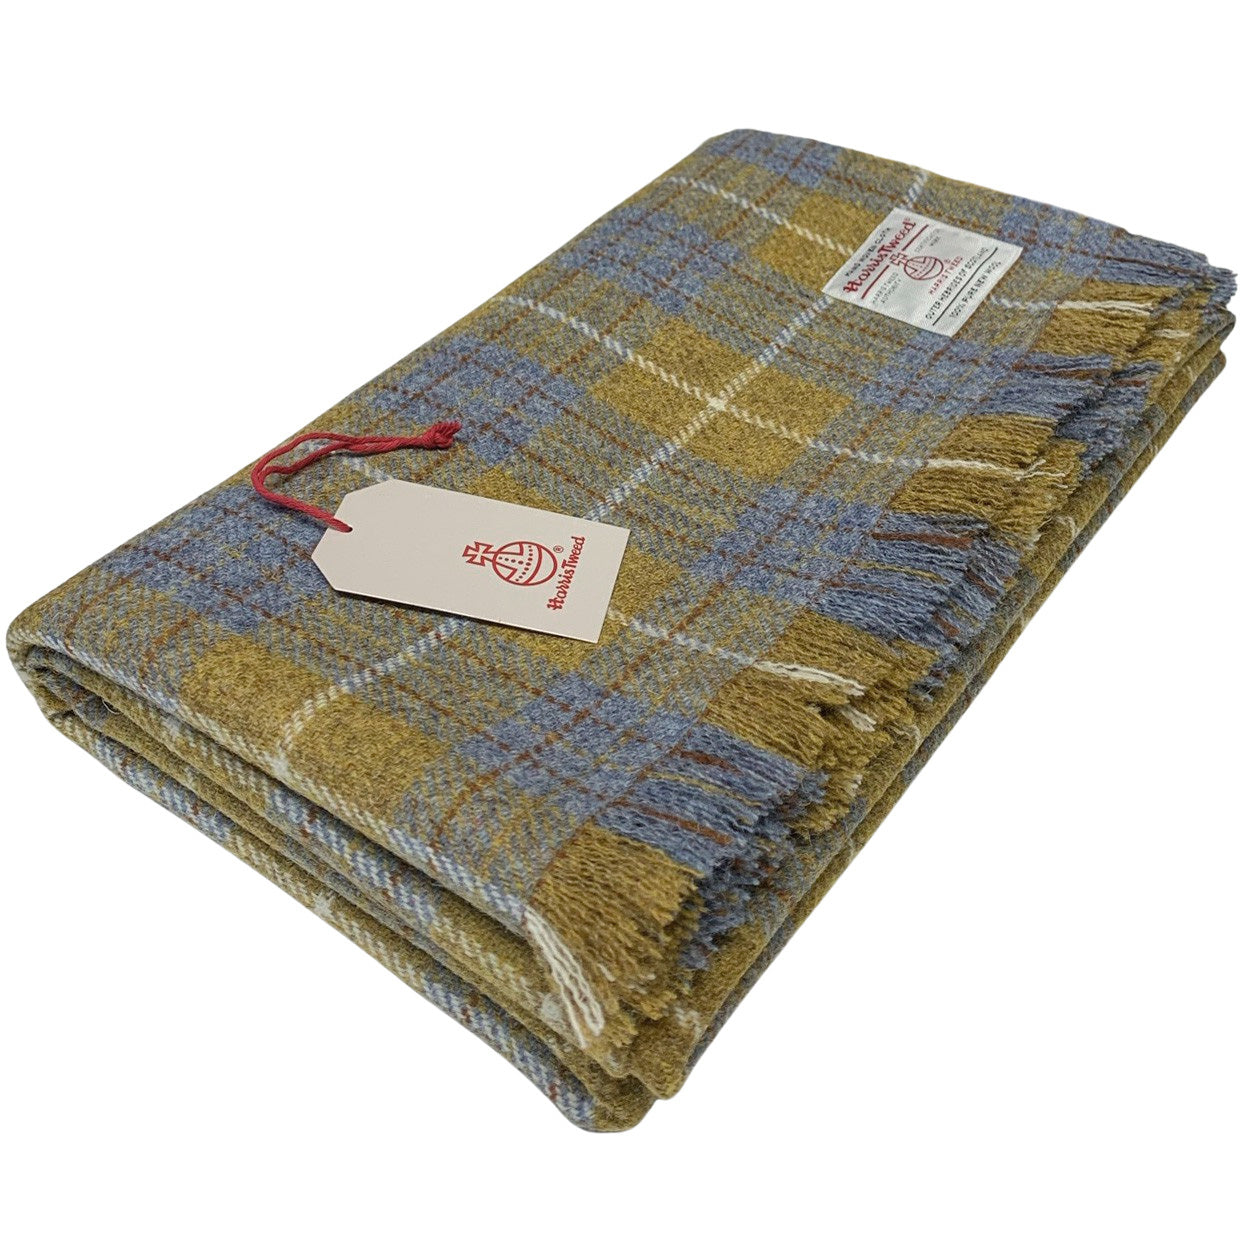 Harris Tweed Blue & Mustard Tartan Pure Wool Large Throw Blanket